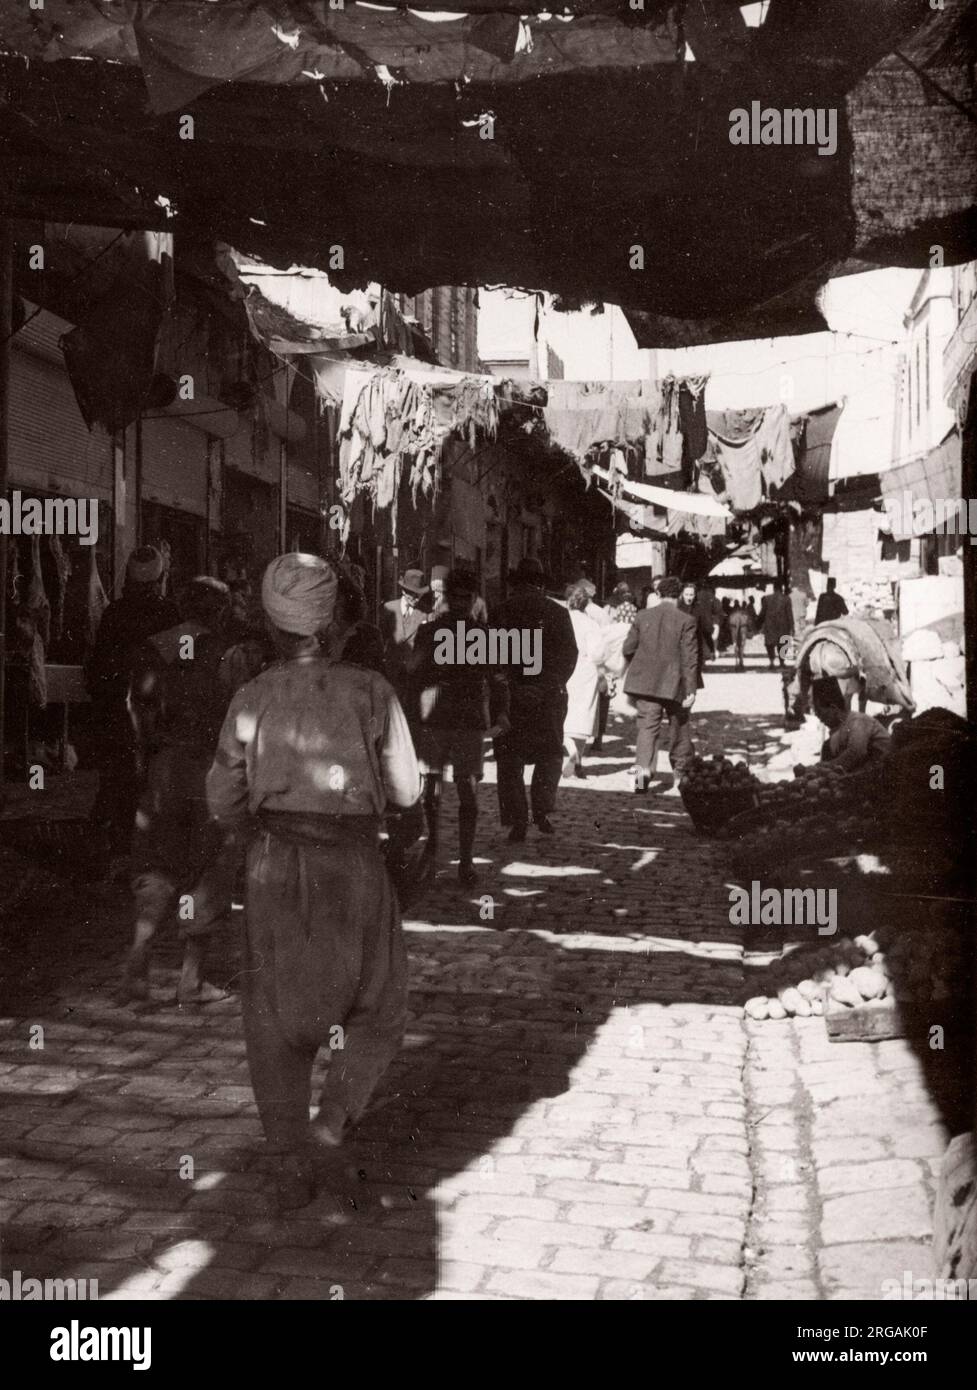 1943 Moyen-Orient Syrie - scène à Alep - vue dans la rue Photographie d'un officier de recrutement de l'armée britannique stationné en Afrique de l'est et au Moyen-Orient pendant la Seconde Guerre mondiale Banque D'Images